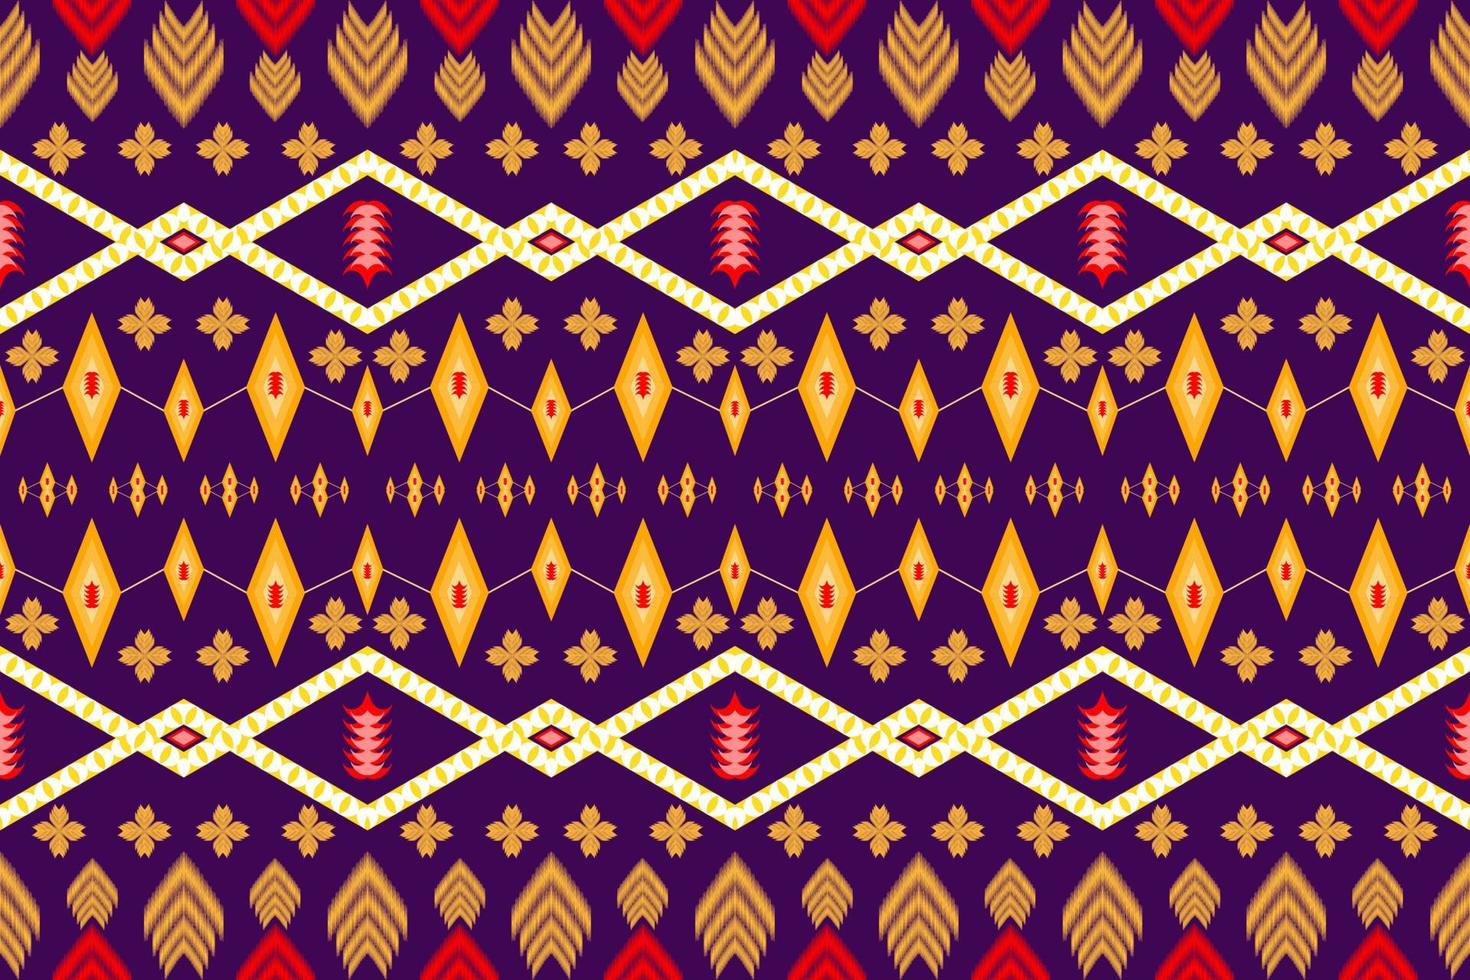 beau motif d'art oriental ethnique ethnique traditionnel. conception pour tapis, papier peint, vêtements, emballage, batik, tissu, illustration vectorielle. figure le style de broderie tribale. vecteur